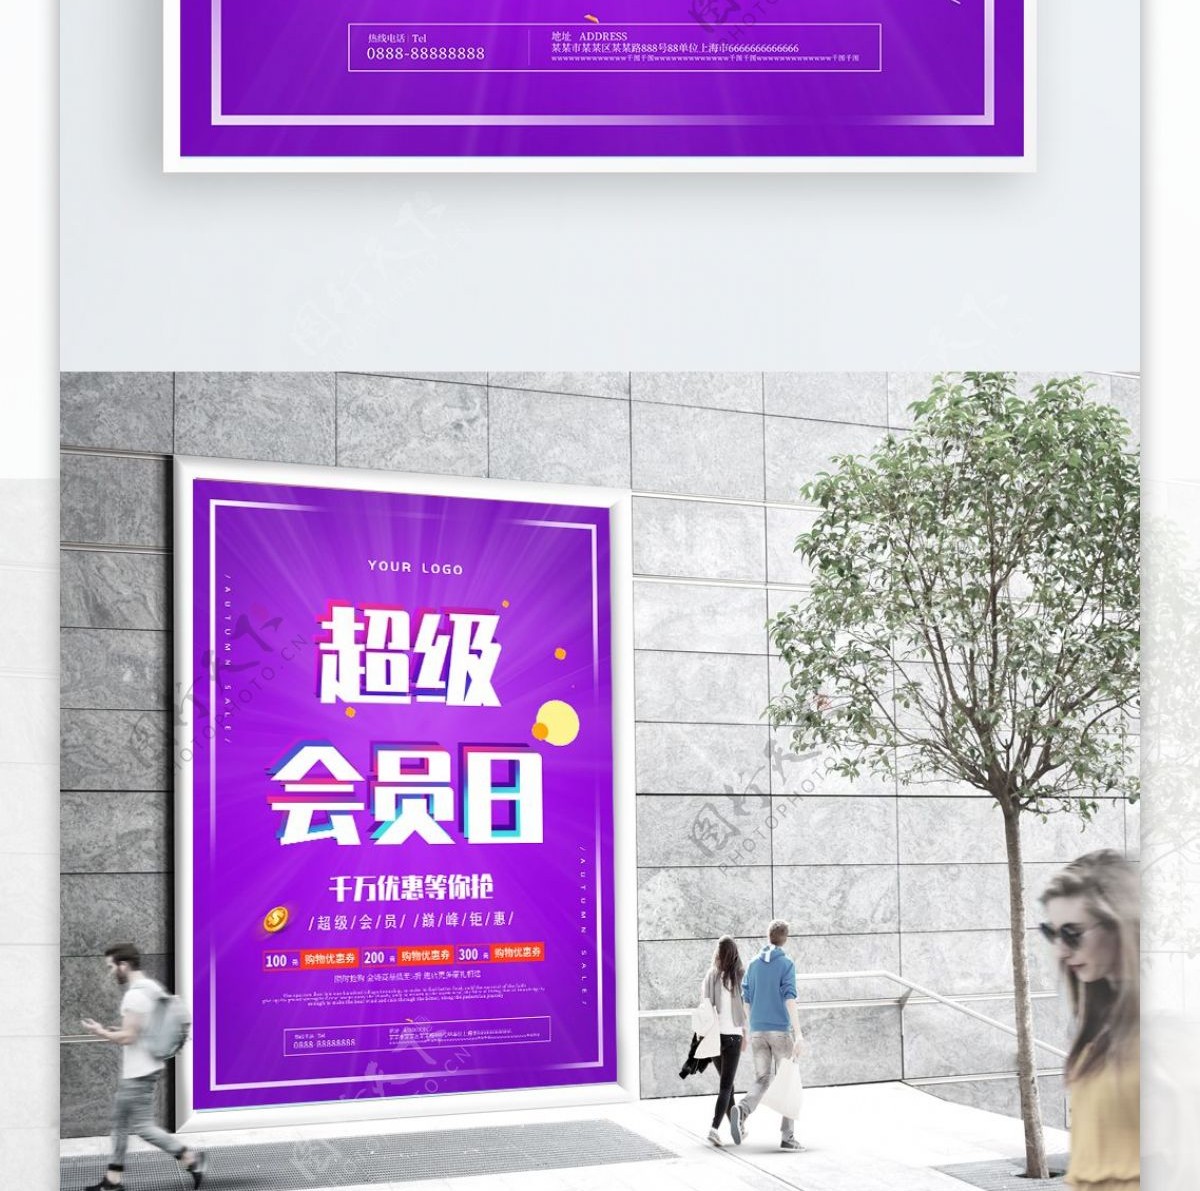 炫彩紫超级会员日优惠促销海报